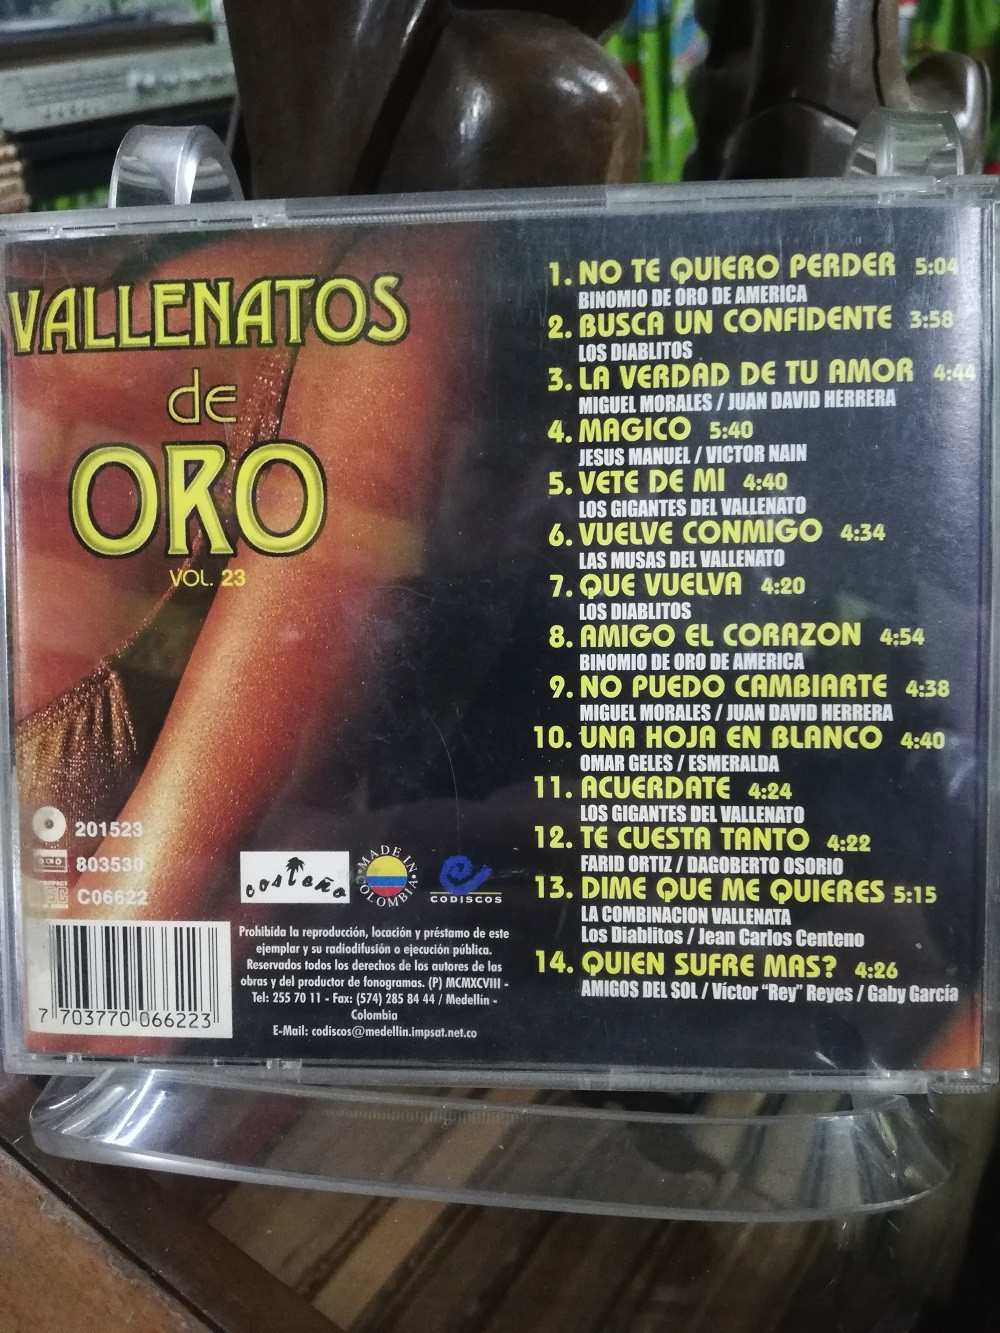 Imagen CD VALLENATOS DE ORO - VALLENATOS DE ORO VOL. 23 2